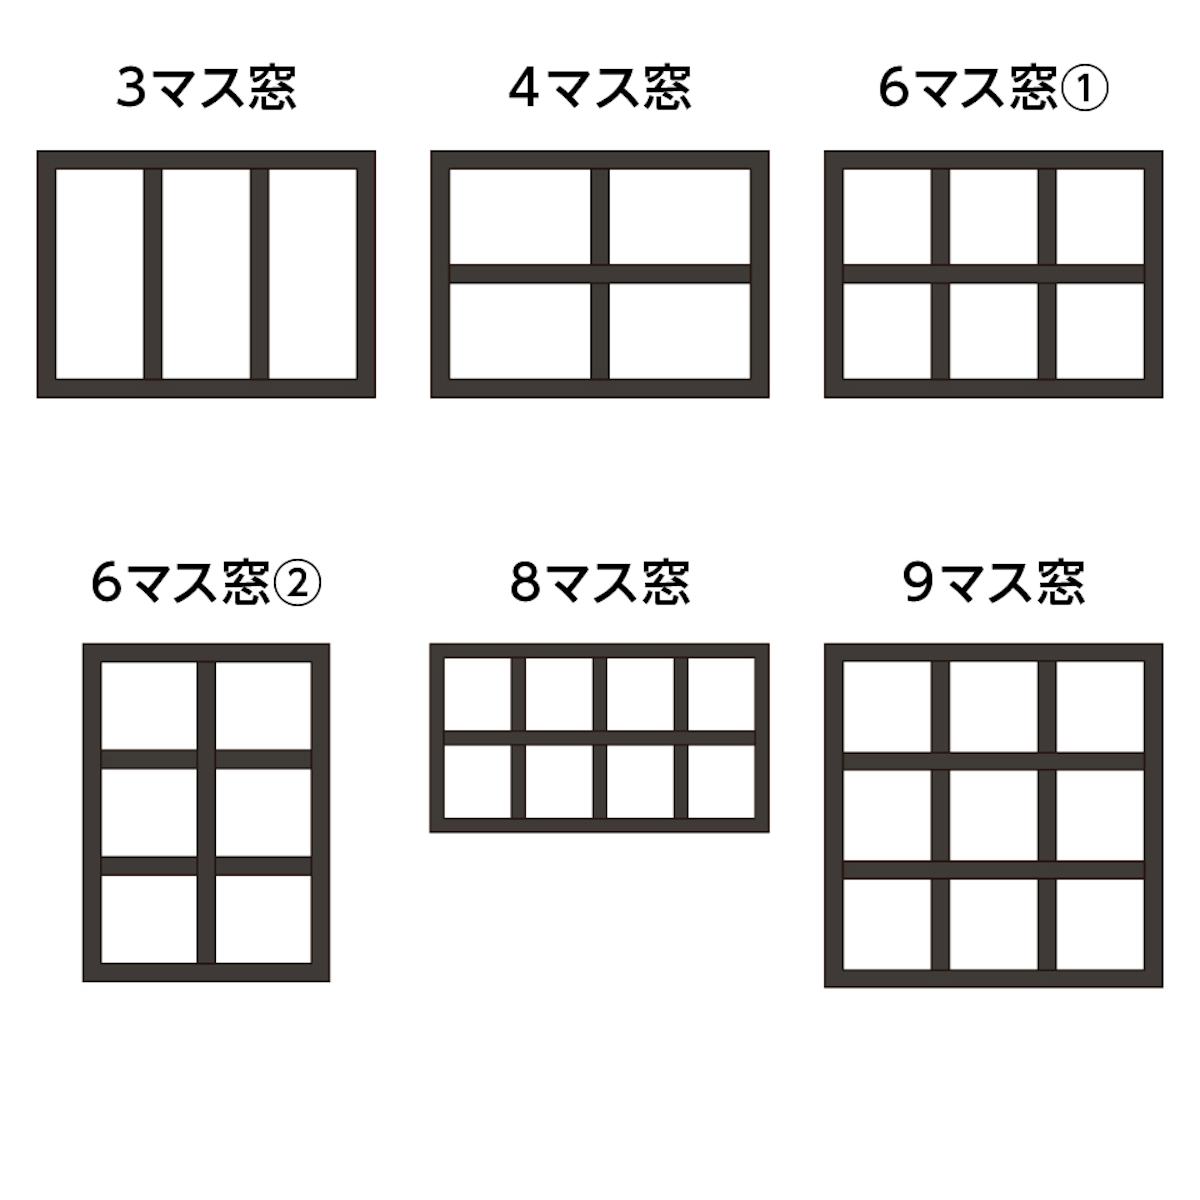 「ステンド風アイアン窓 アイアンフレームⅢ」の格子デザインは6種類